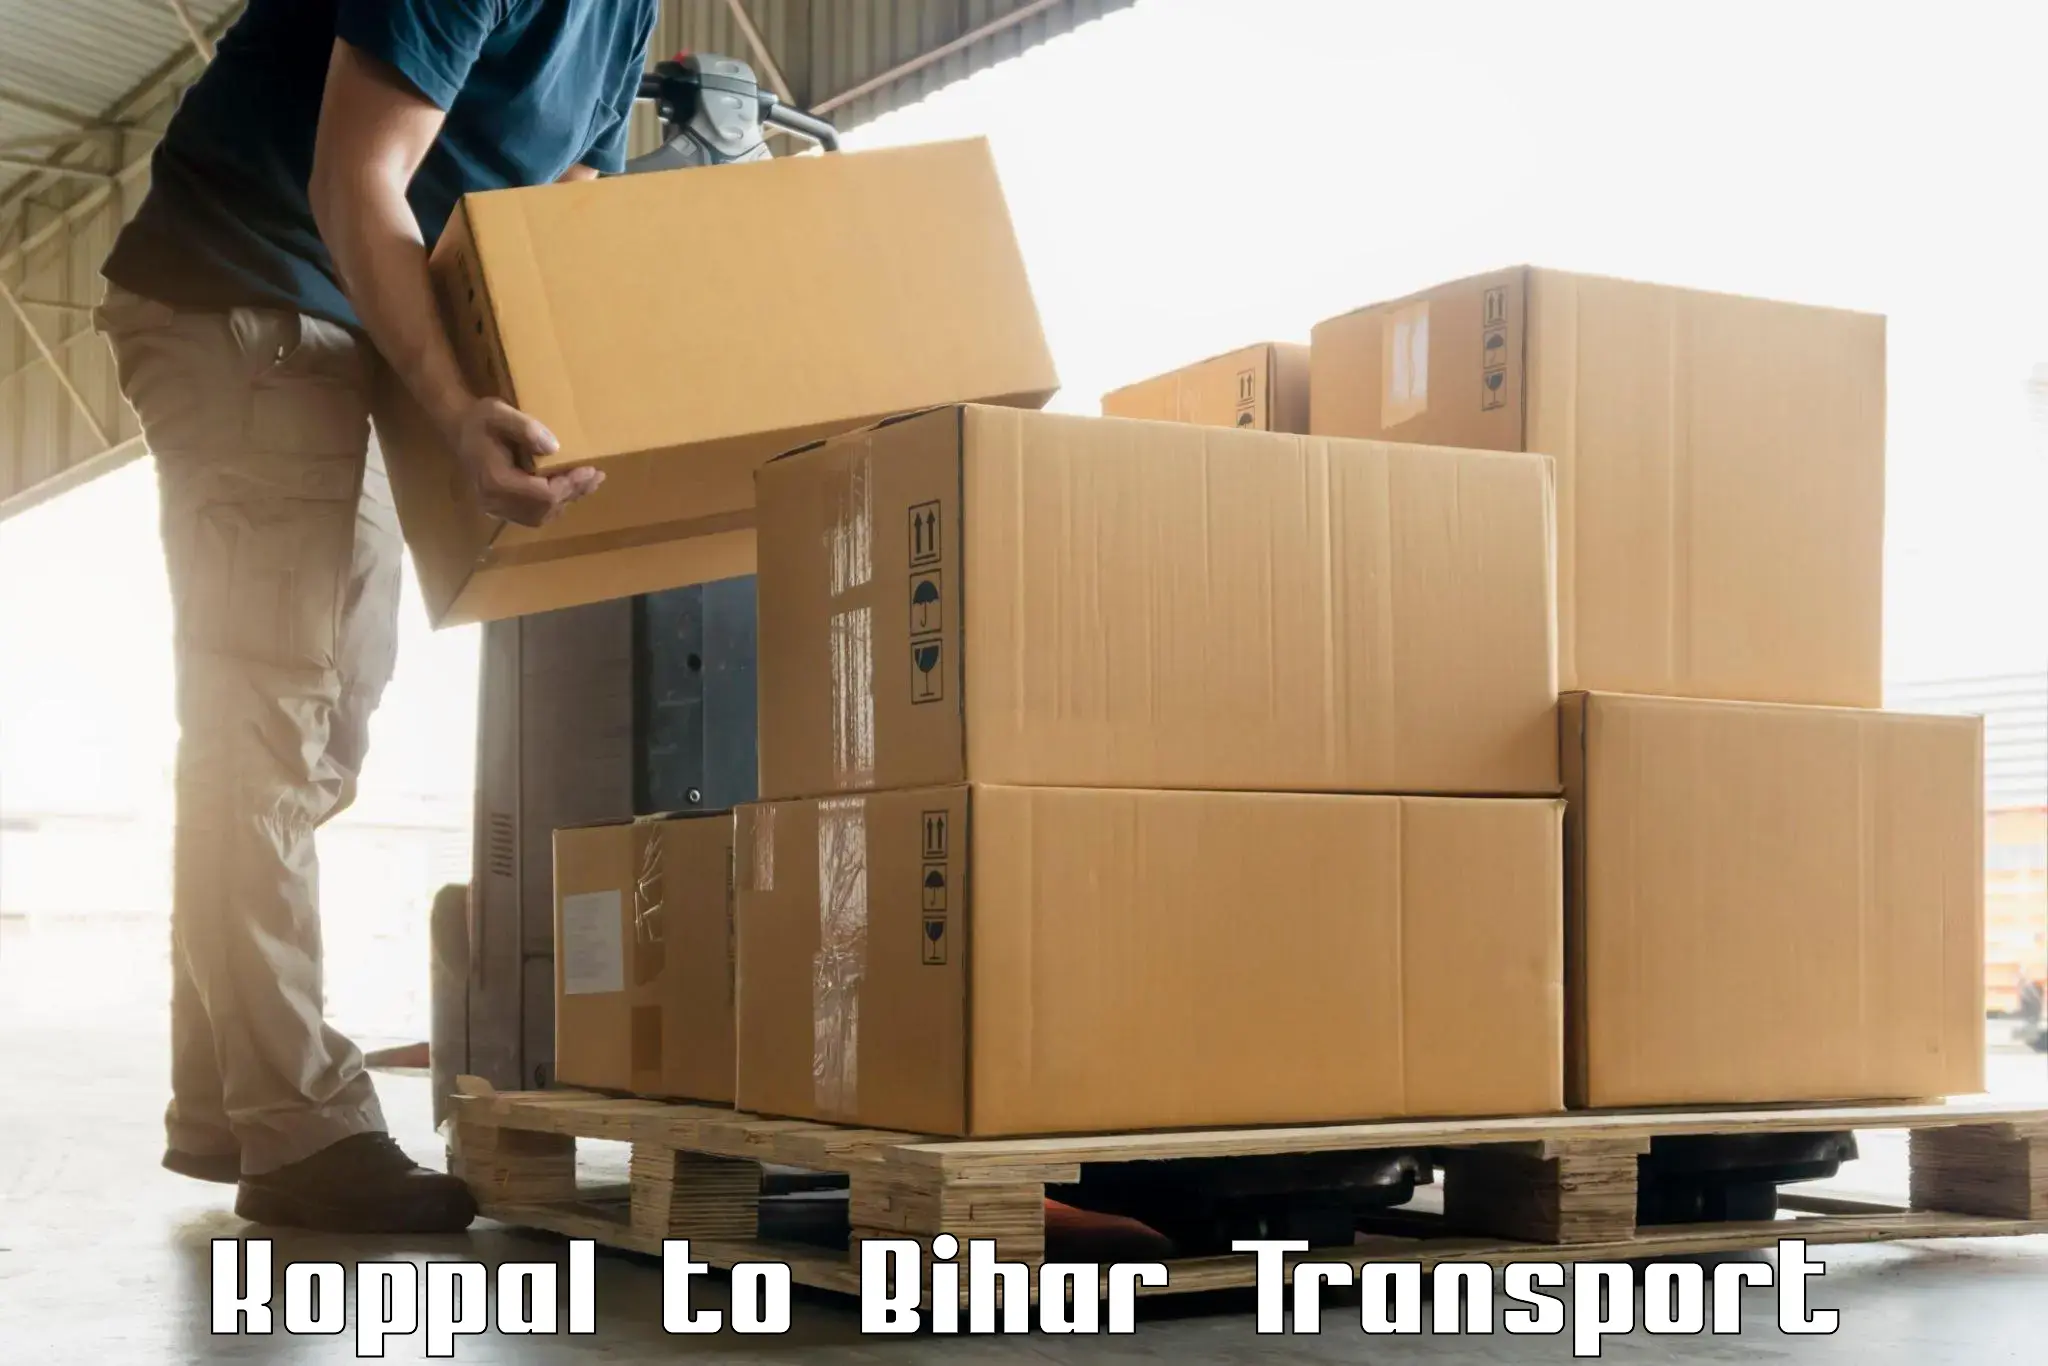 All India transport service Koppal to Chandi Nalanda